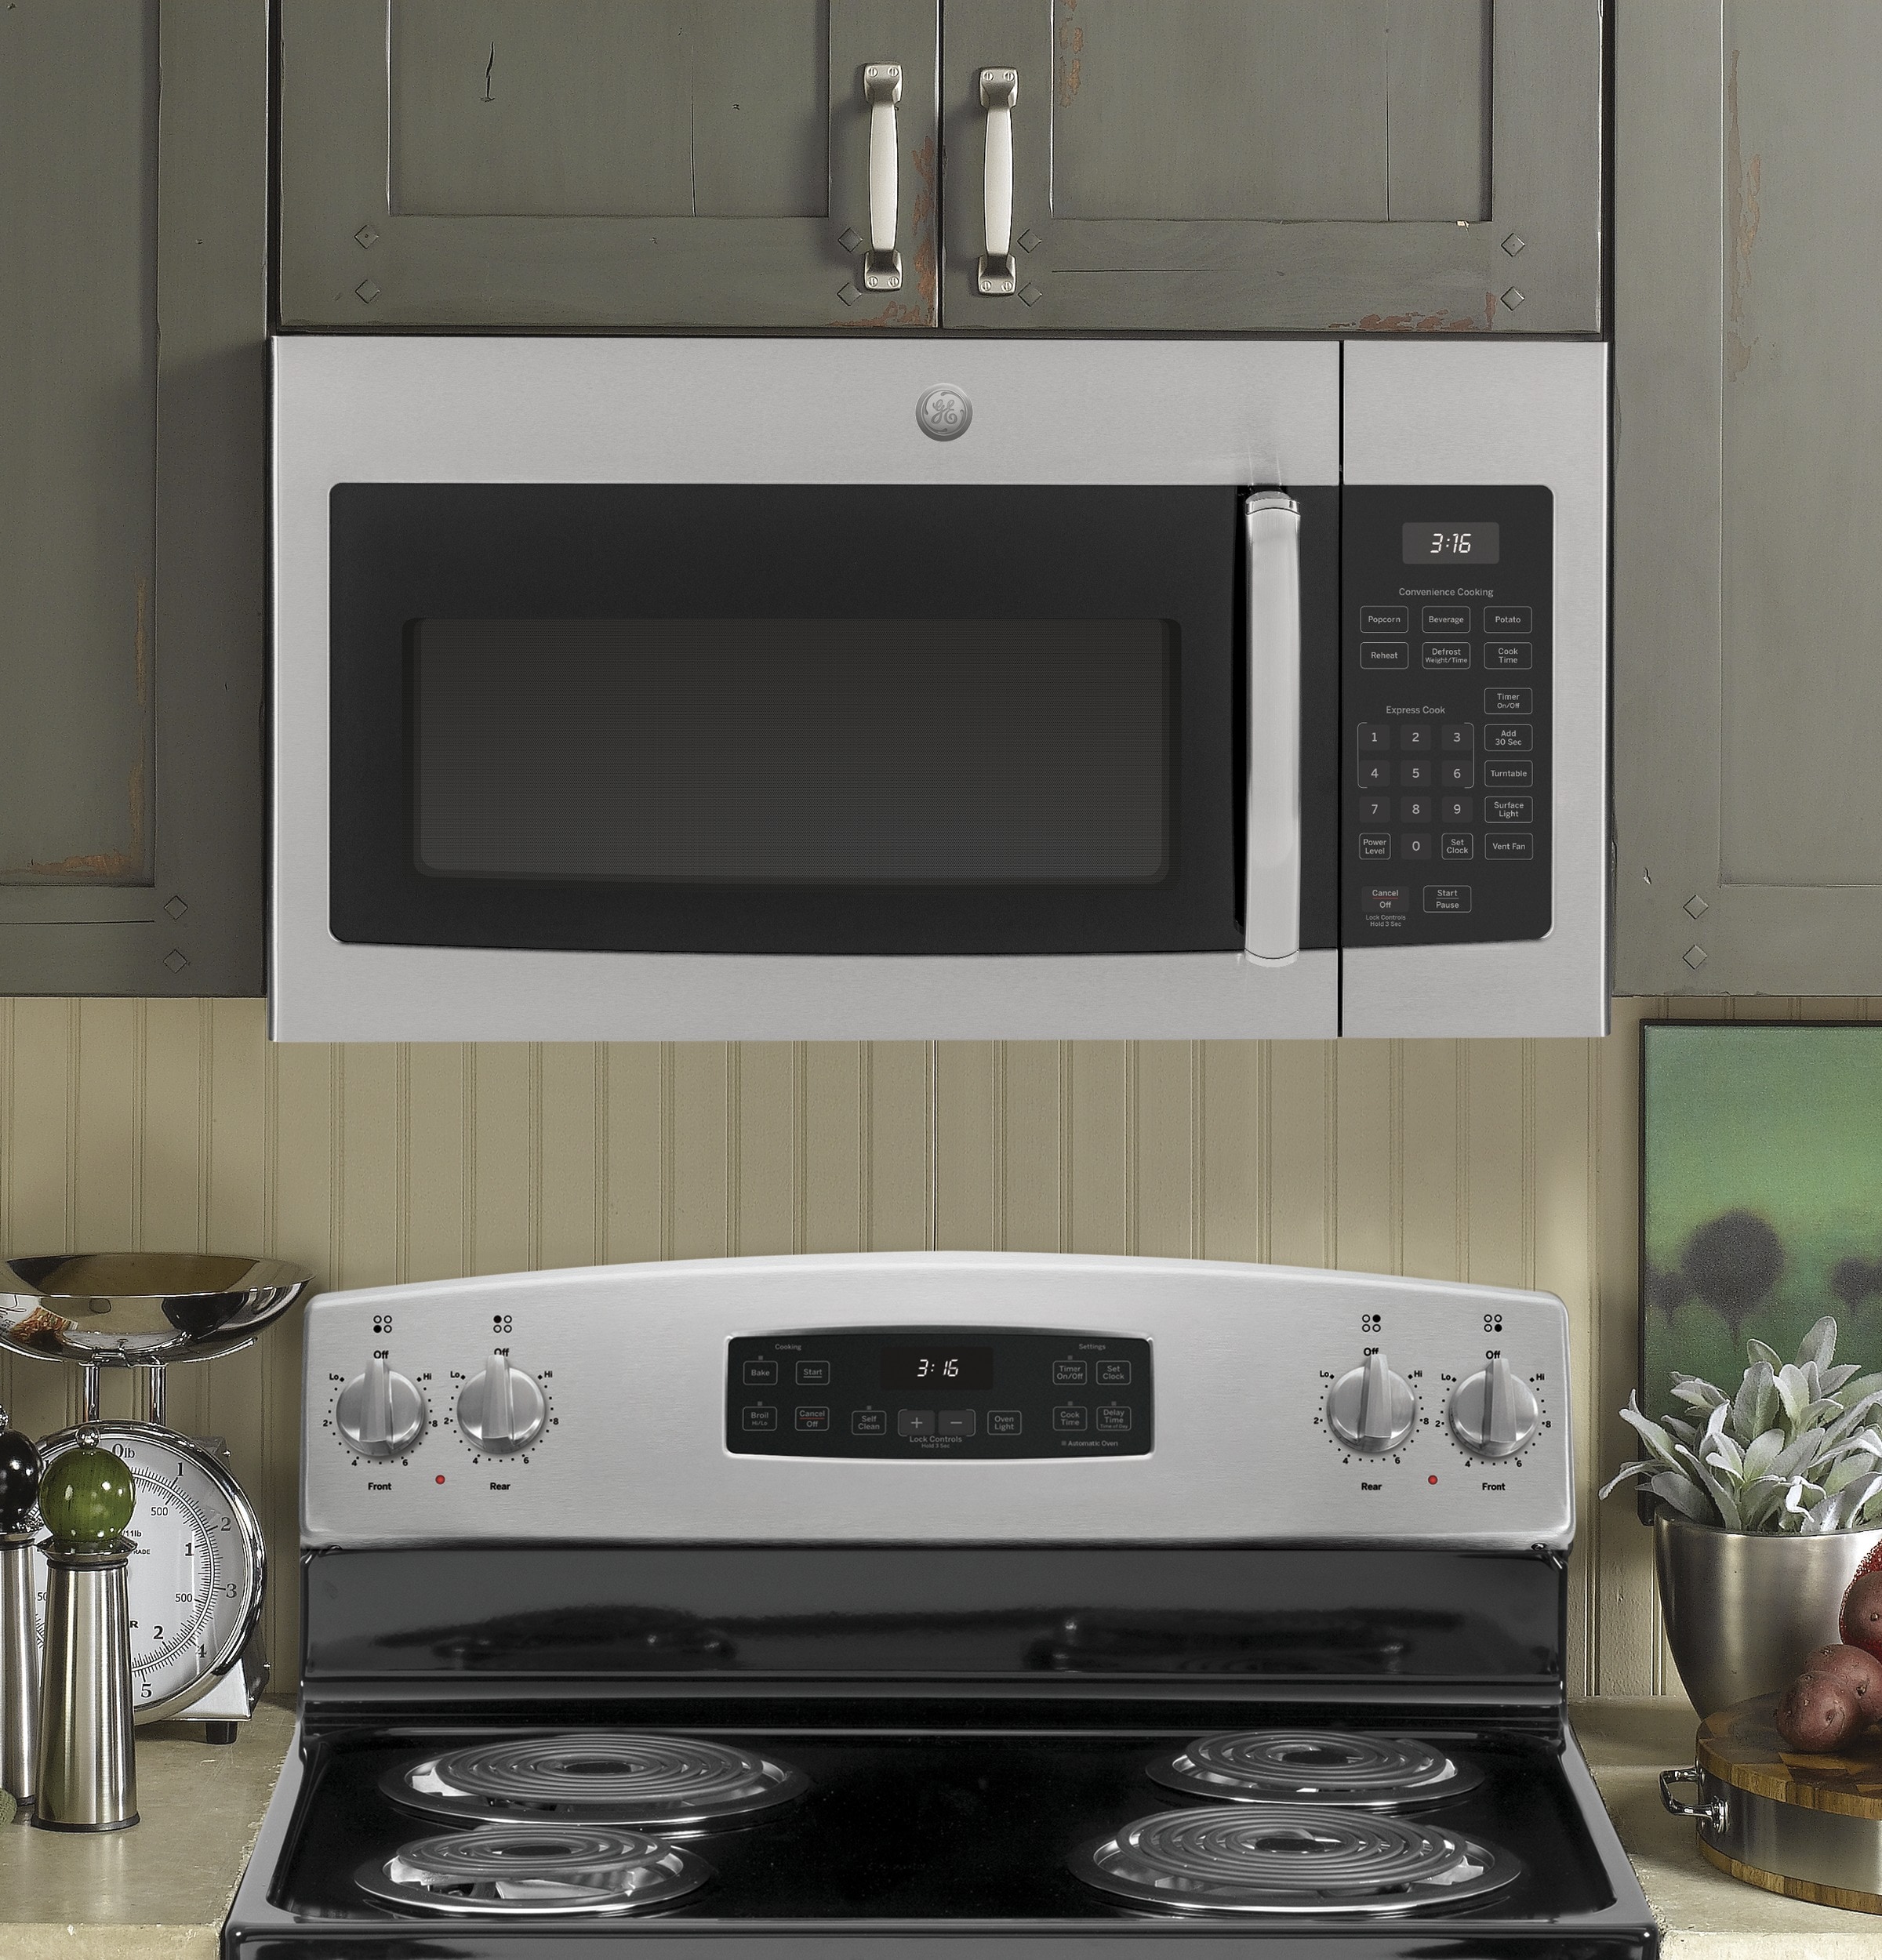 Можно открыть микроволновку. Samsung Microwave Oven с вытяжкой. Встраиваемая микроволновая печь с вытяжкой. Микроволновка встроенная в вытяжку. Микроволновая печь с вытяжкой над плитой.